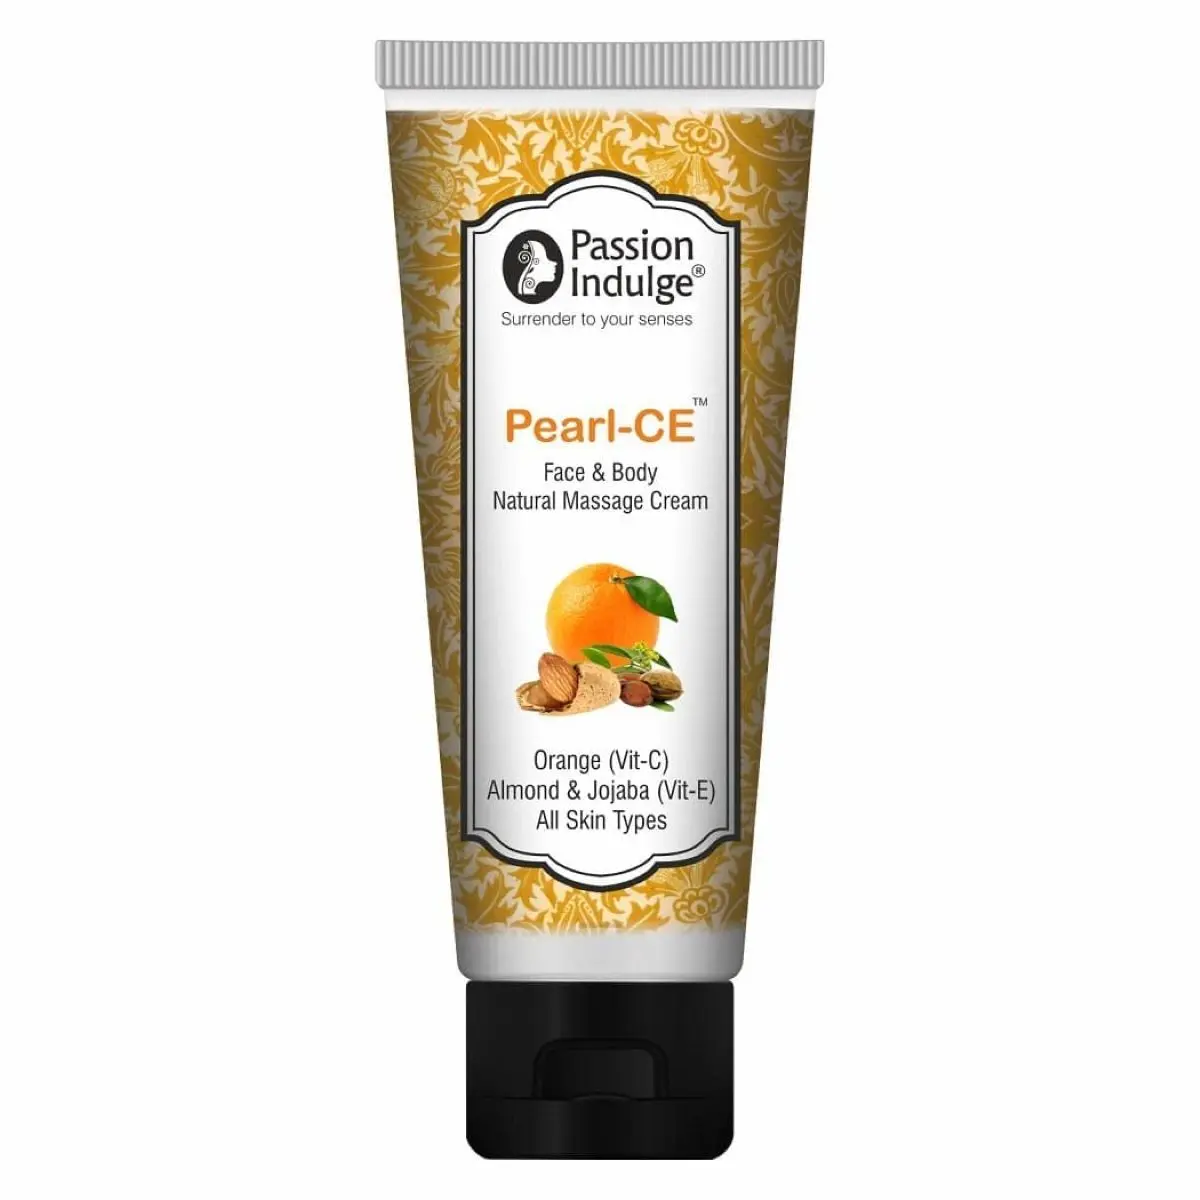 Passion Indulge PEARL-CE MASSAGE CREAM |Vitamin C + vitamin E message cream| -100gm